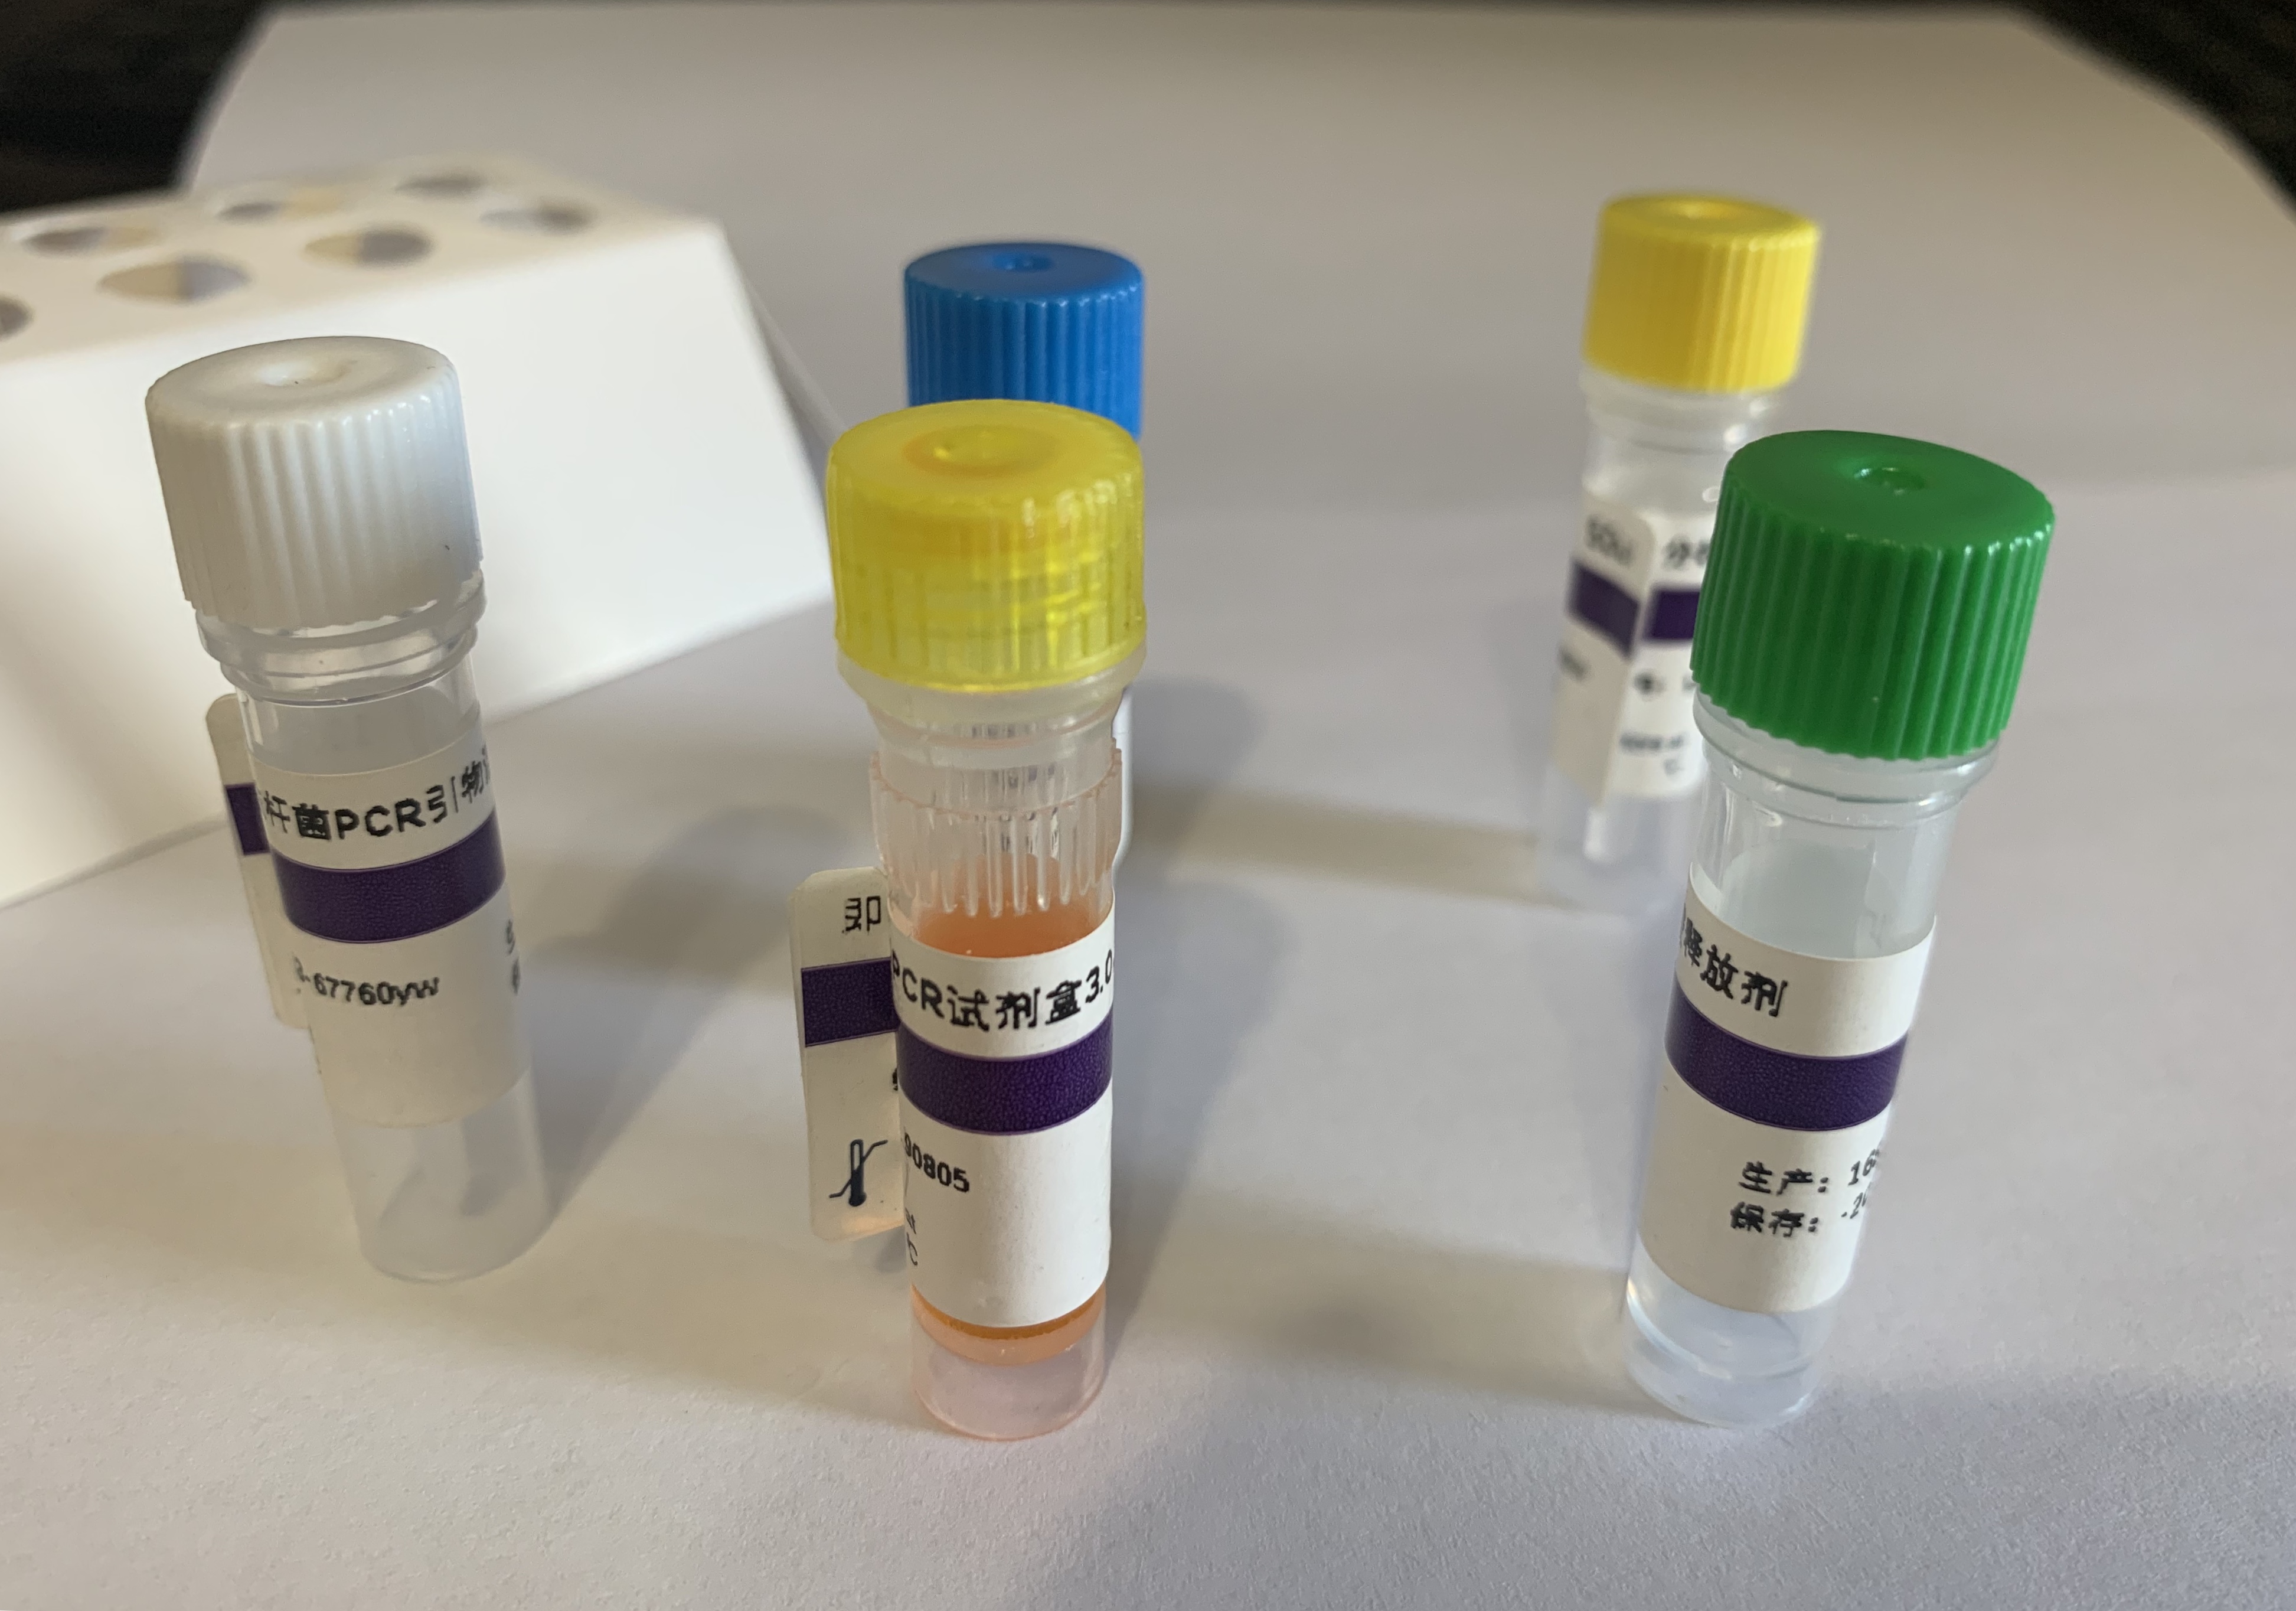 人免疫缺陷病毒II型B组前病毒PCR试剂盒